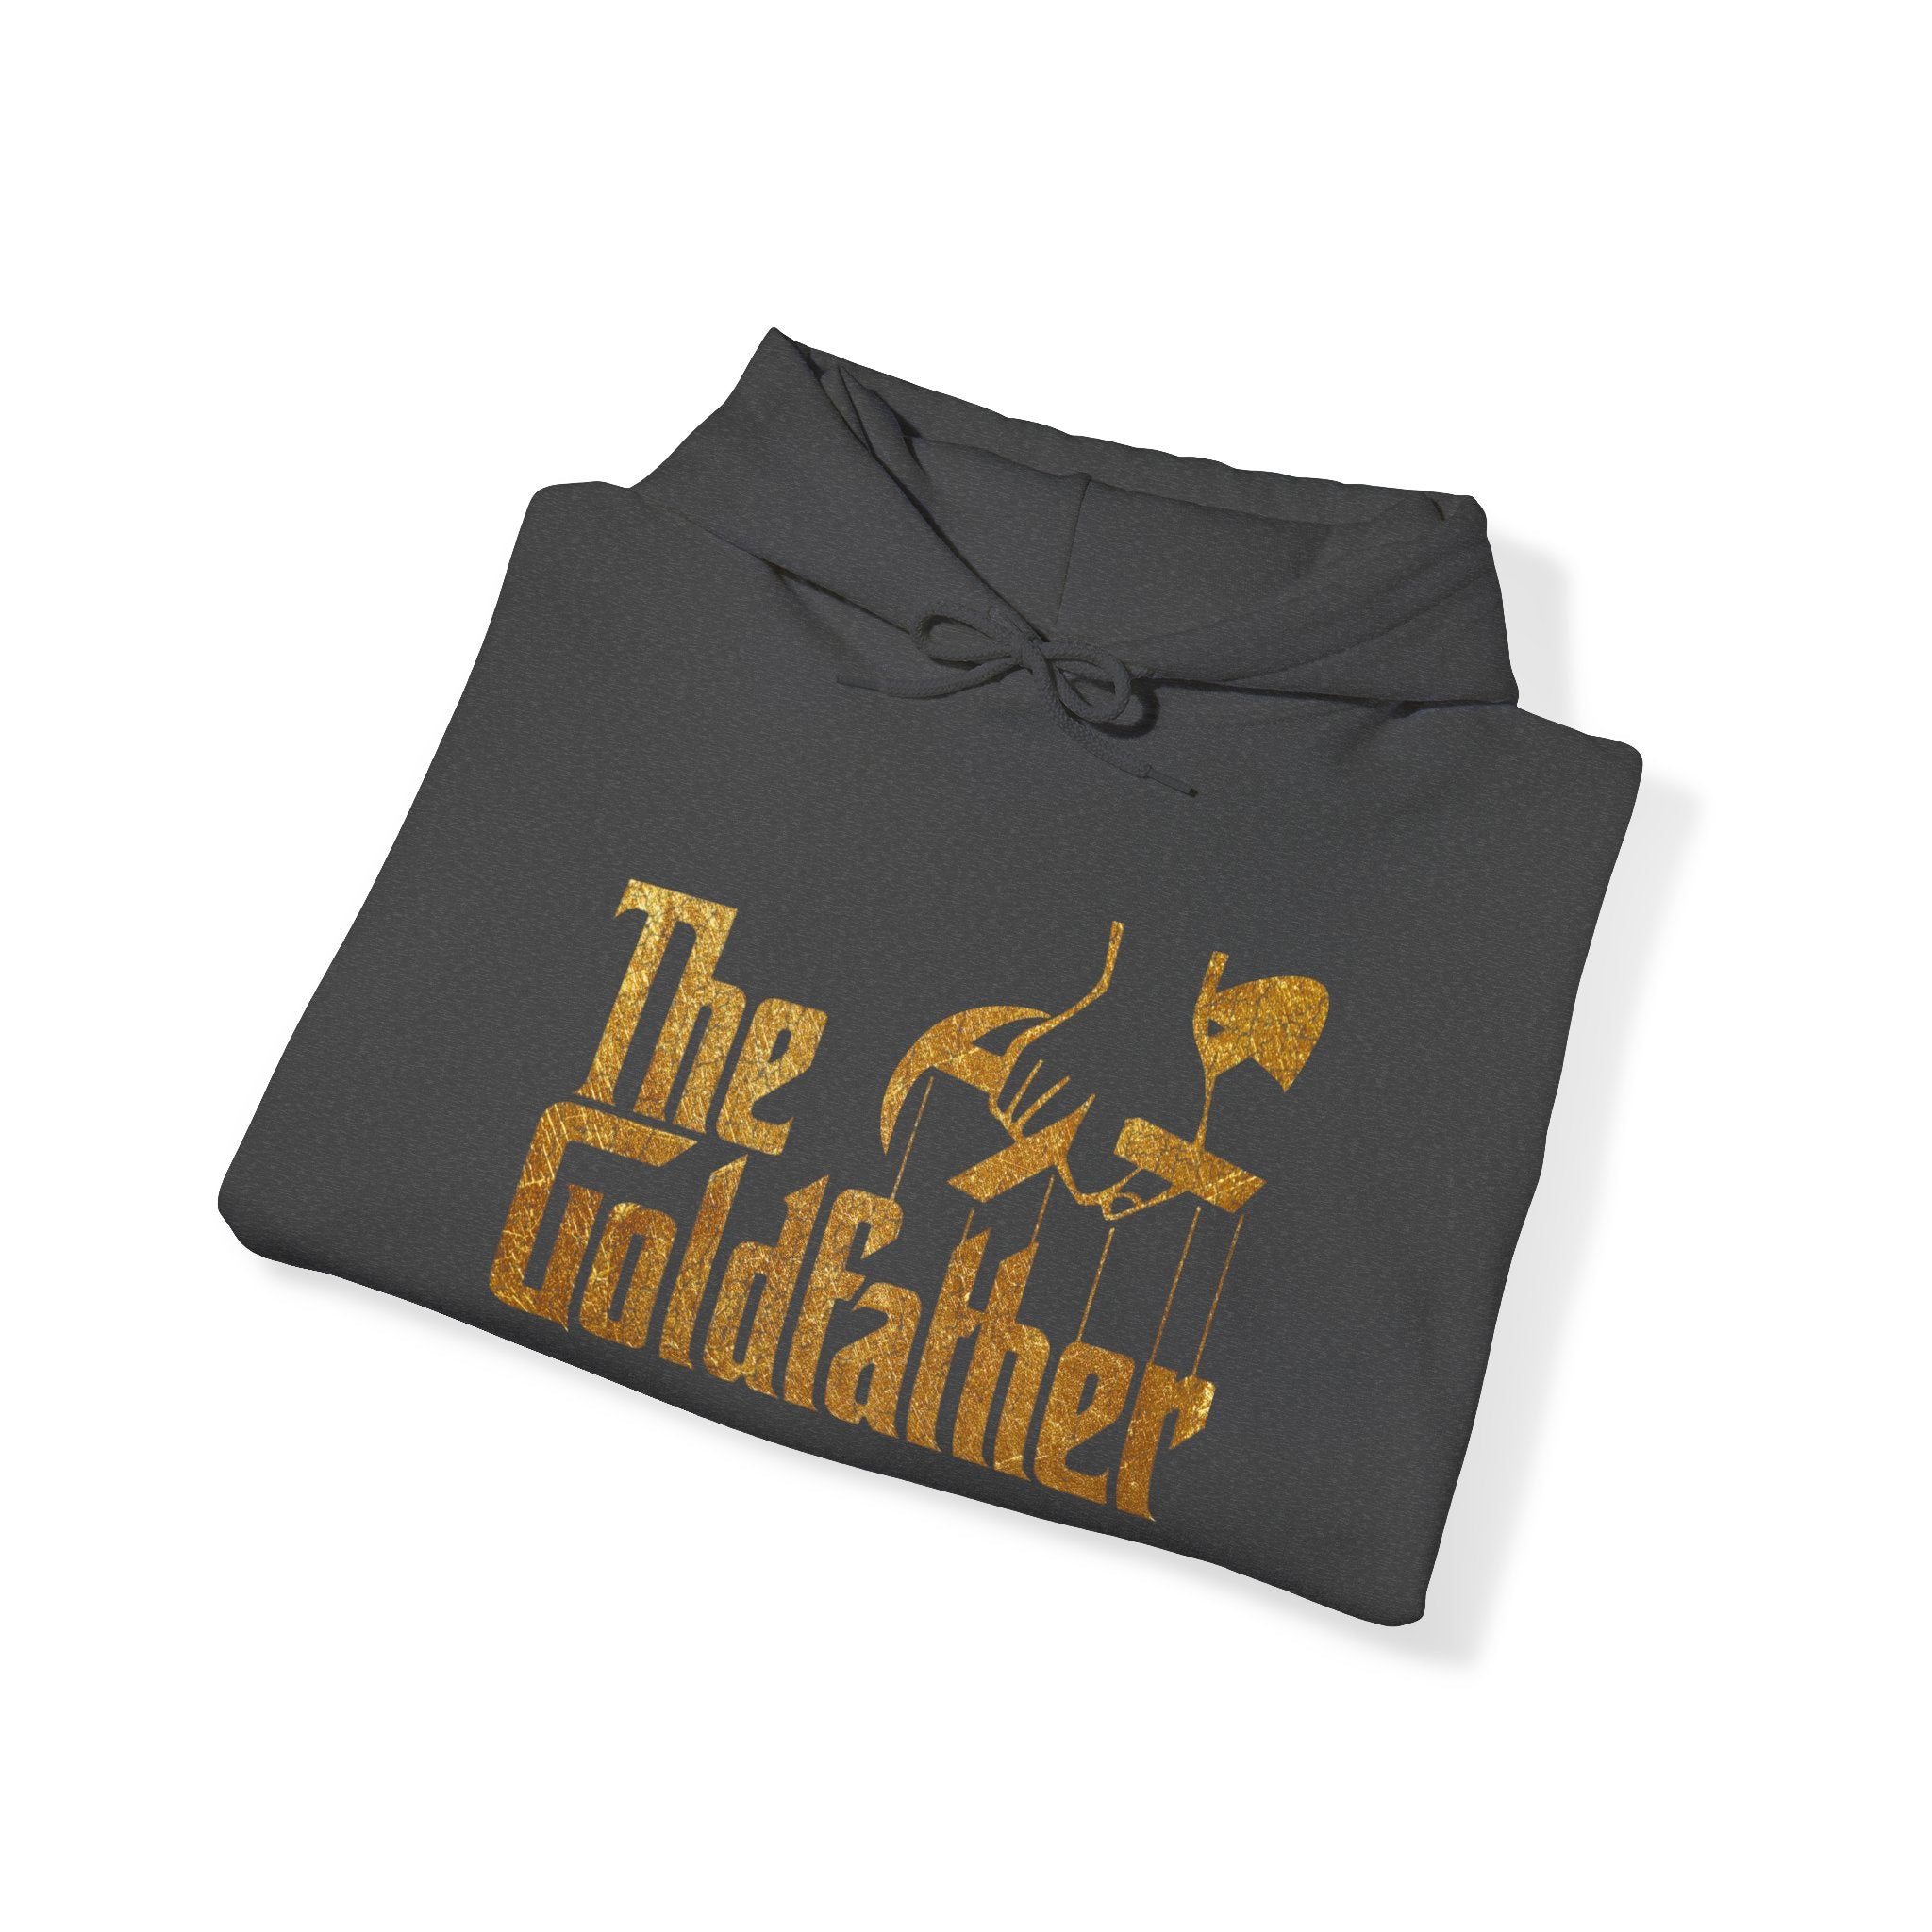 The Goldfather Hooded Sweatshirt